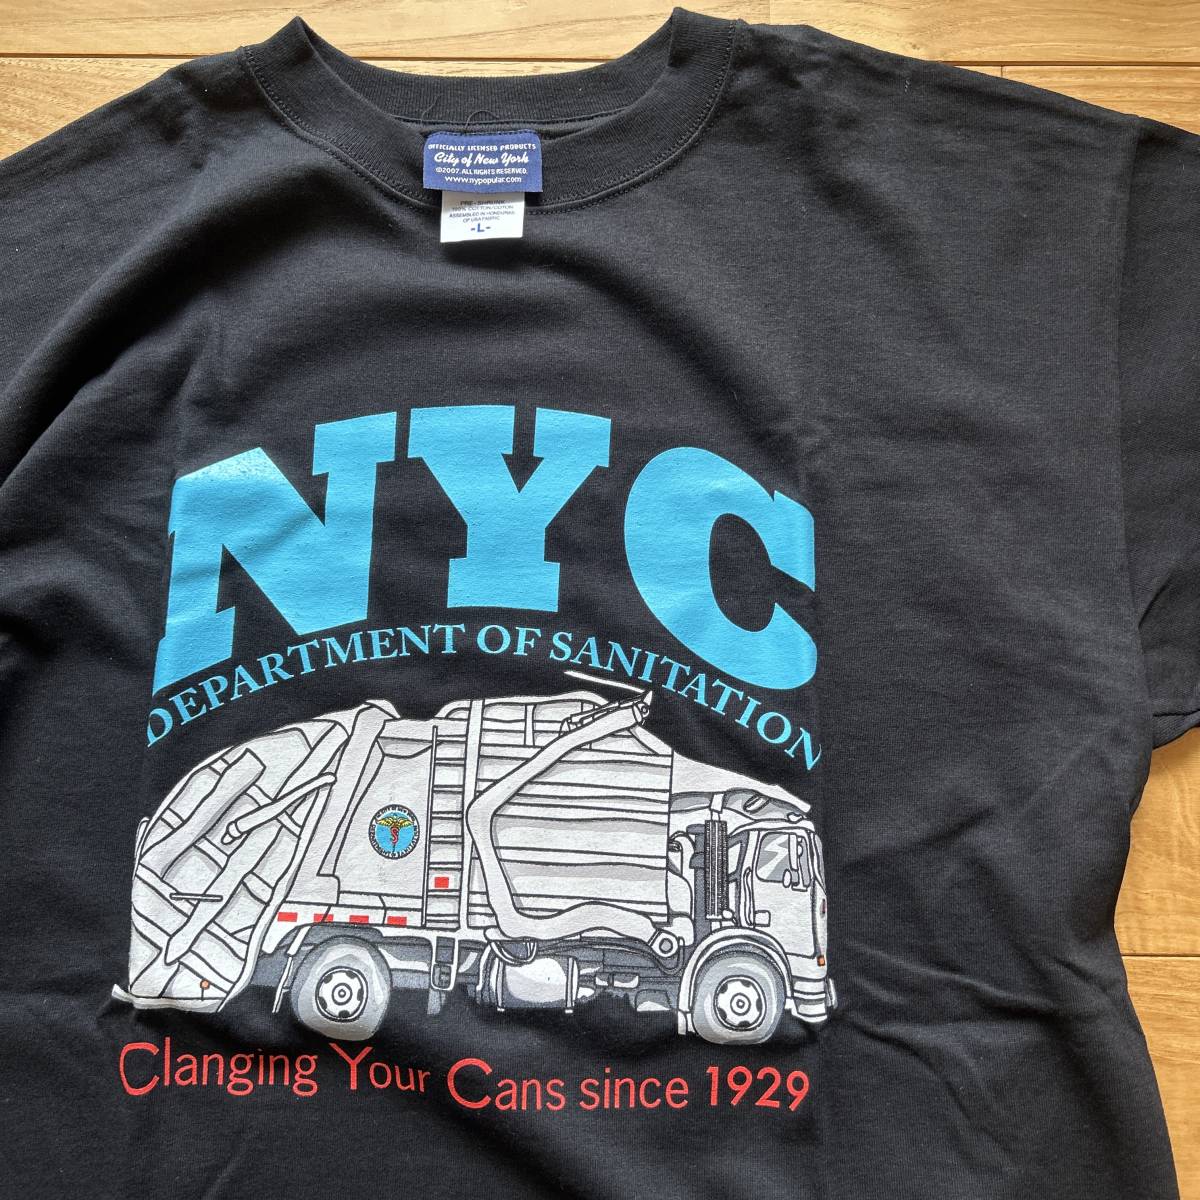 新品 送料無料 DSNY Department of Sanitation New York NYC オフィシャル Tシャツ Lサイズ Black 下げ札付き_画像2